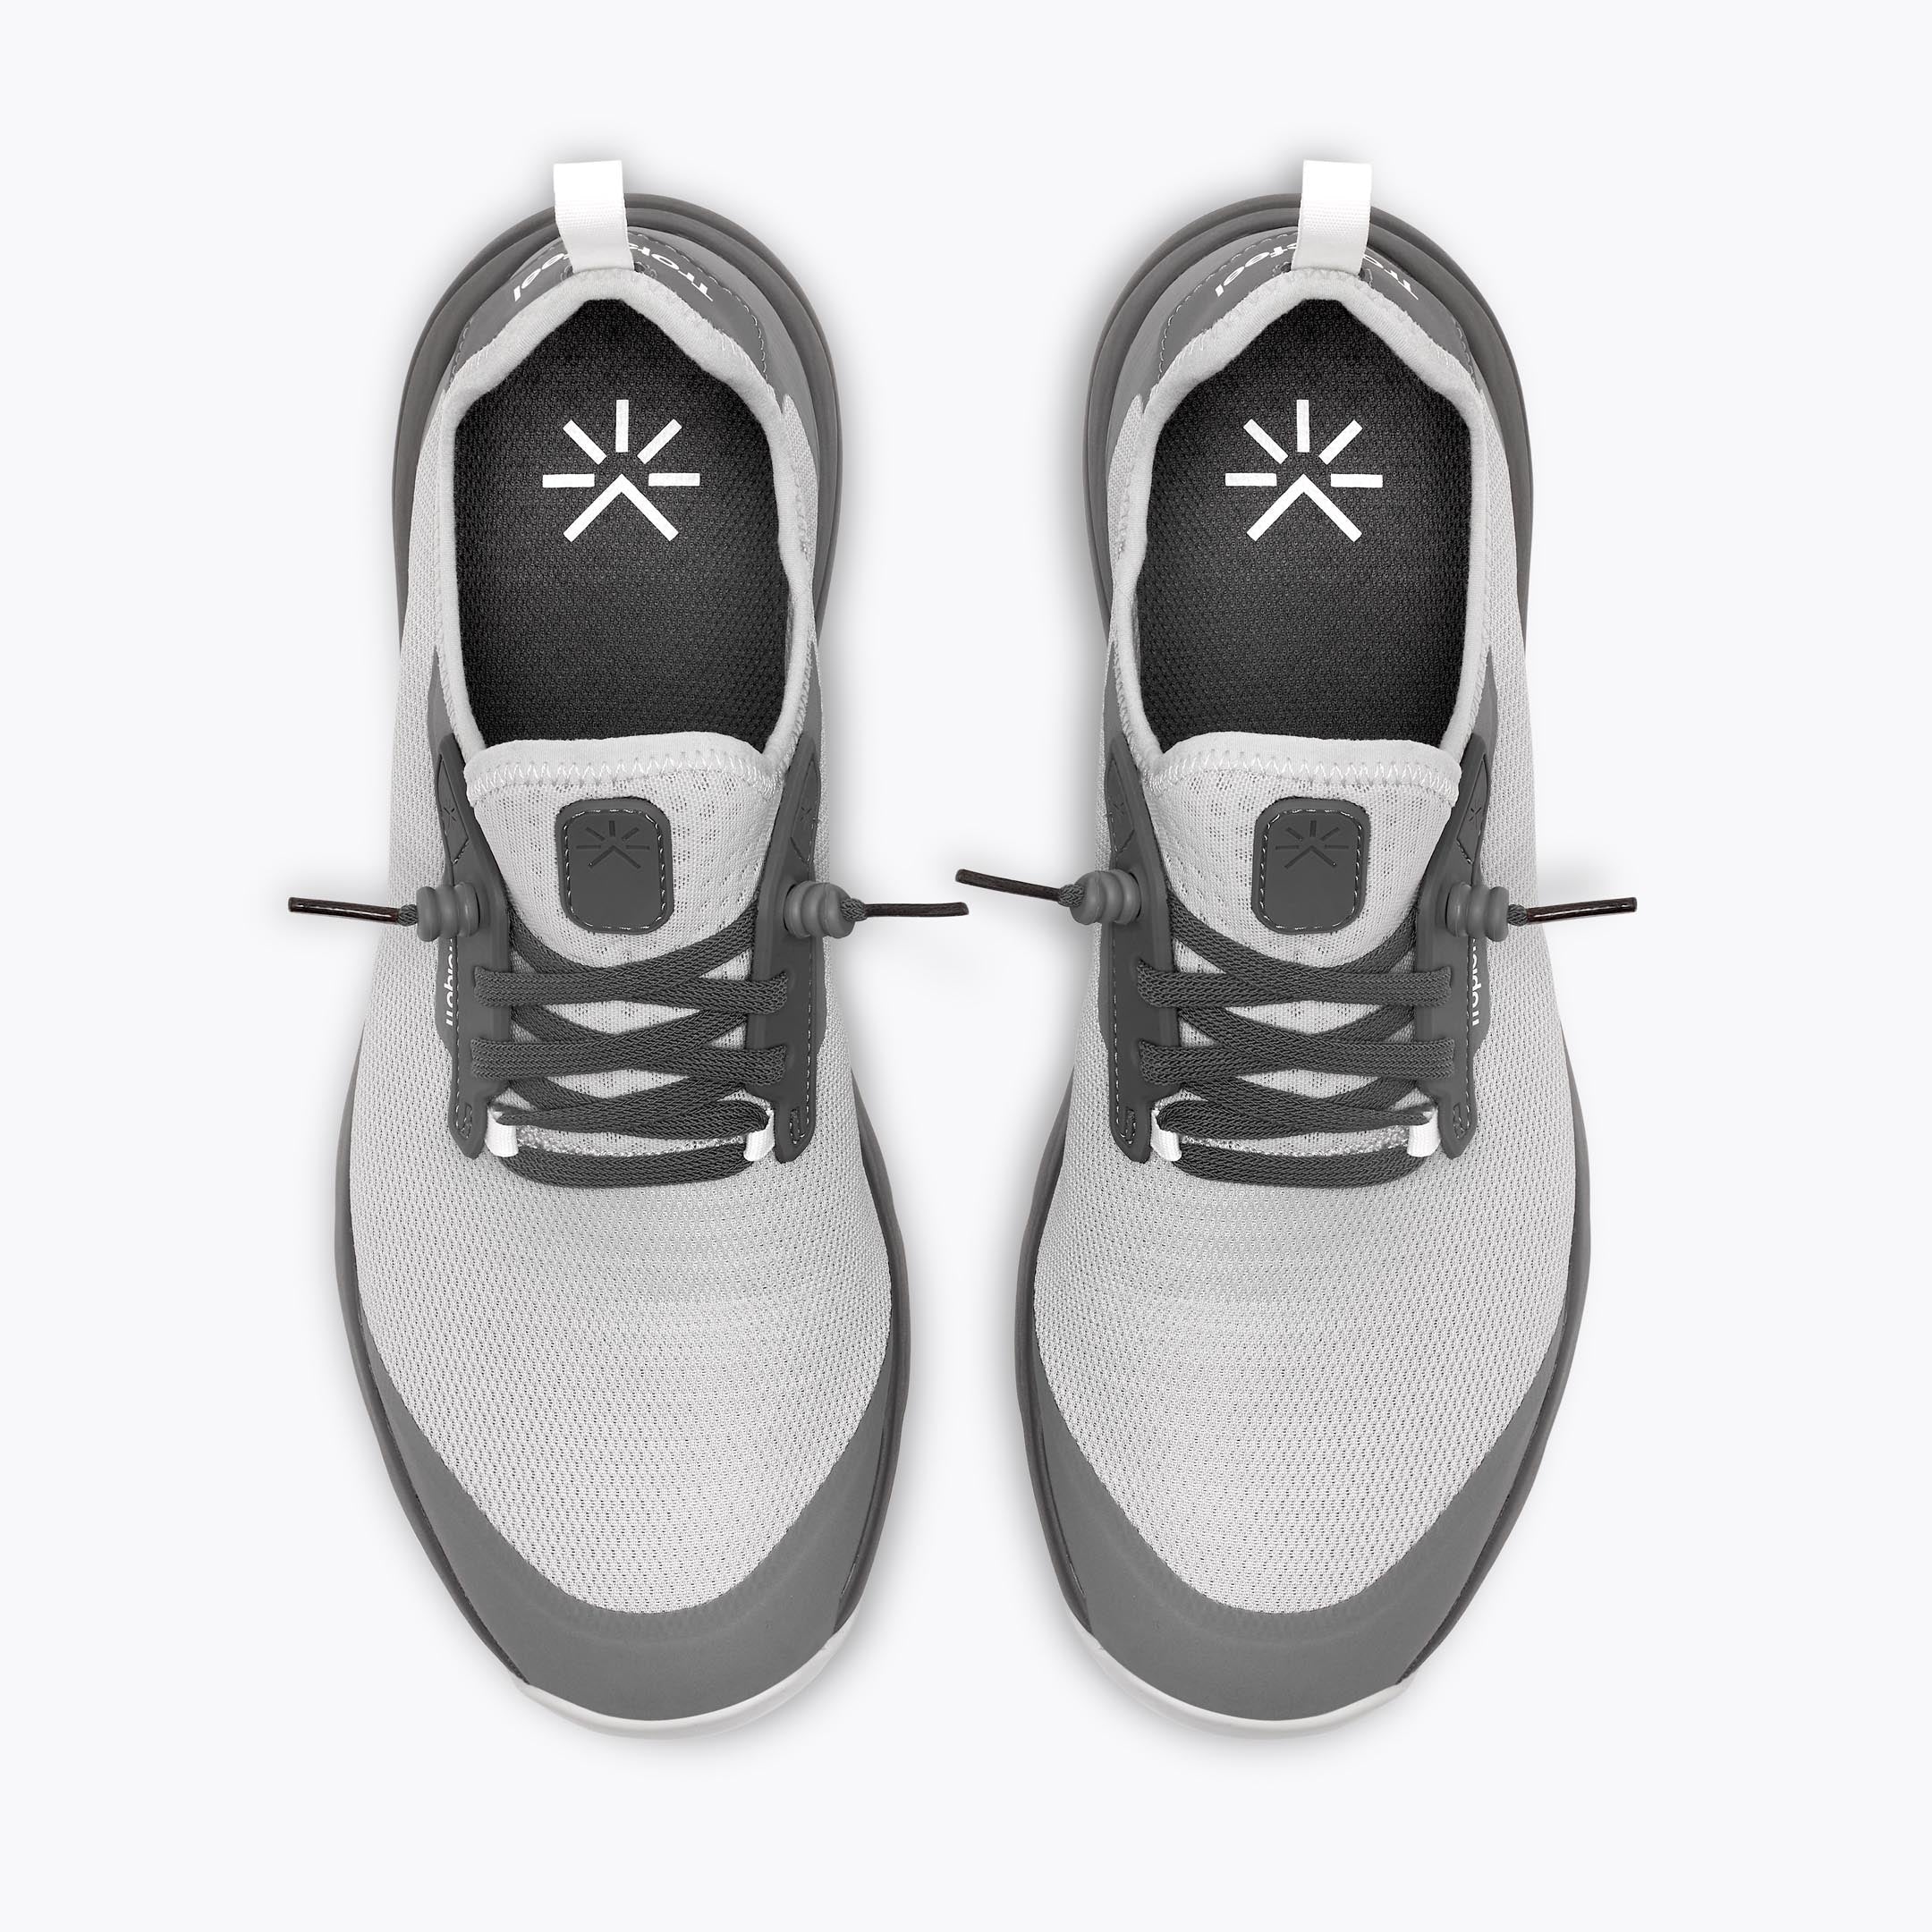 All-Terrain Lite - Lightweight and Packable Sneaker